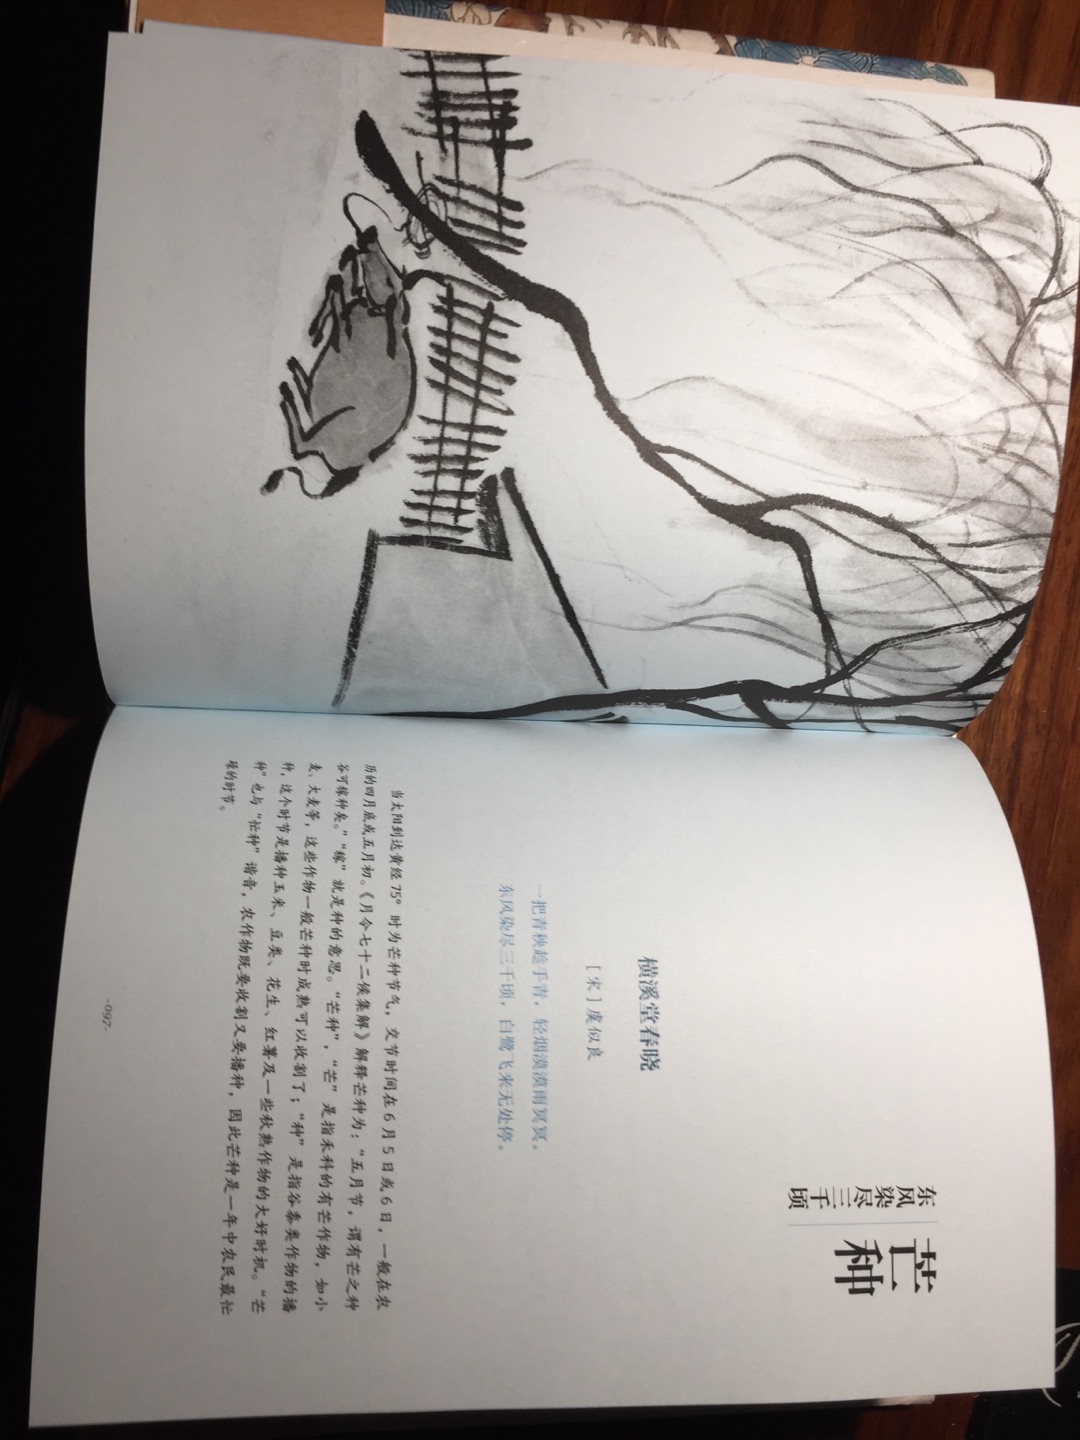 买过儿童版的 可以学习中国老祖宗的季节划分买这本可以补充学习新知识点每篇还配有对应的古诗